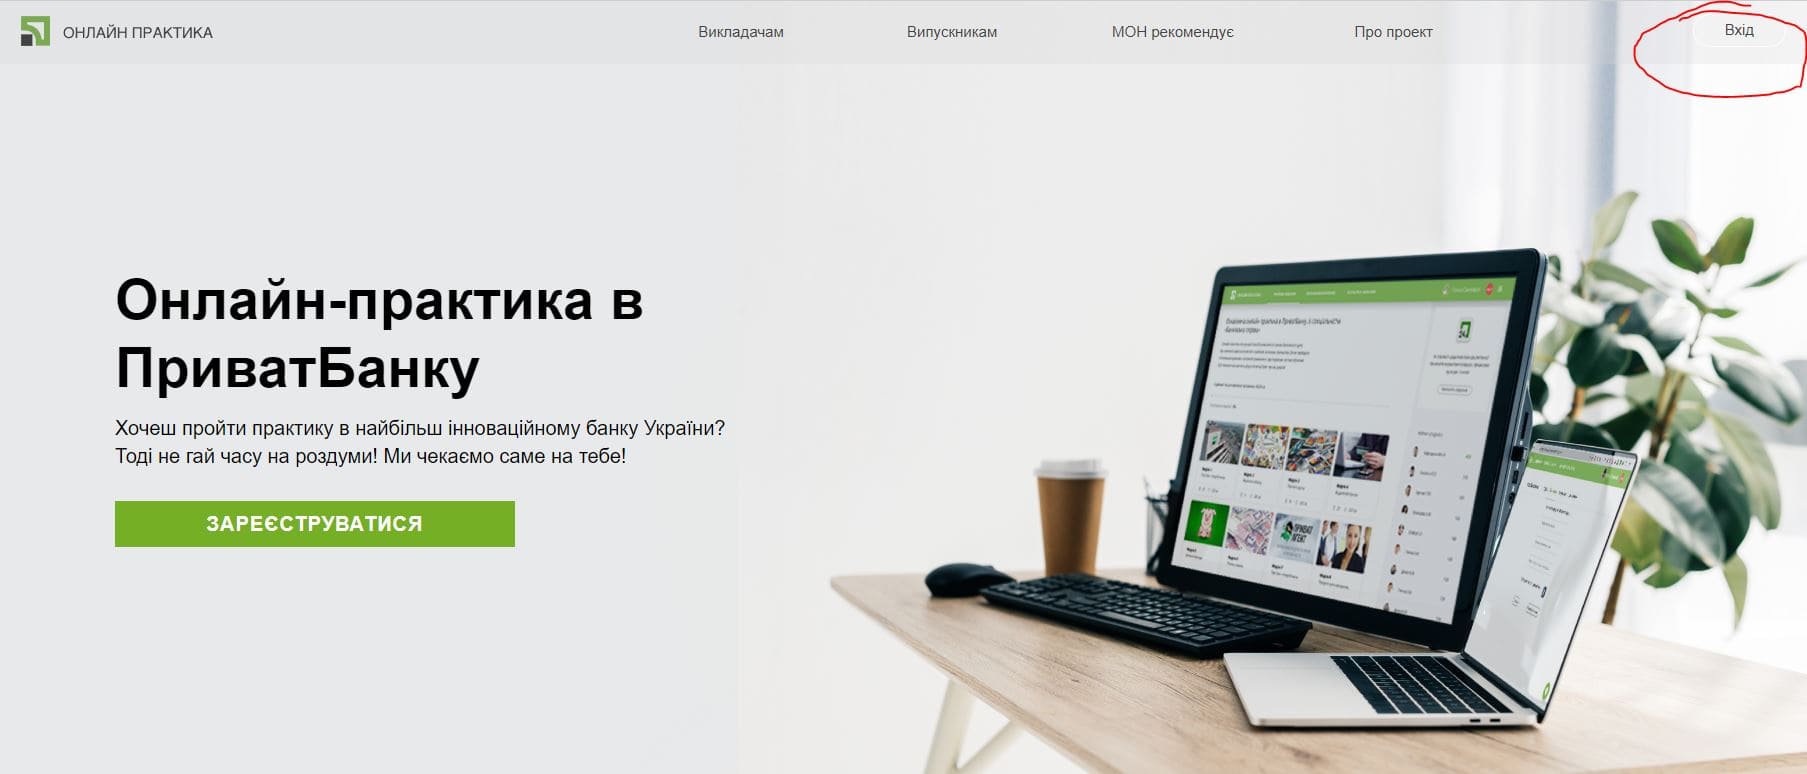 ПриватБанк практика (practice.privatbank.ua)